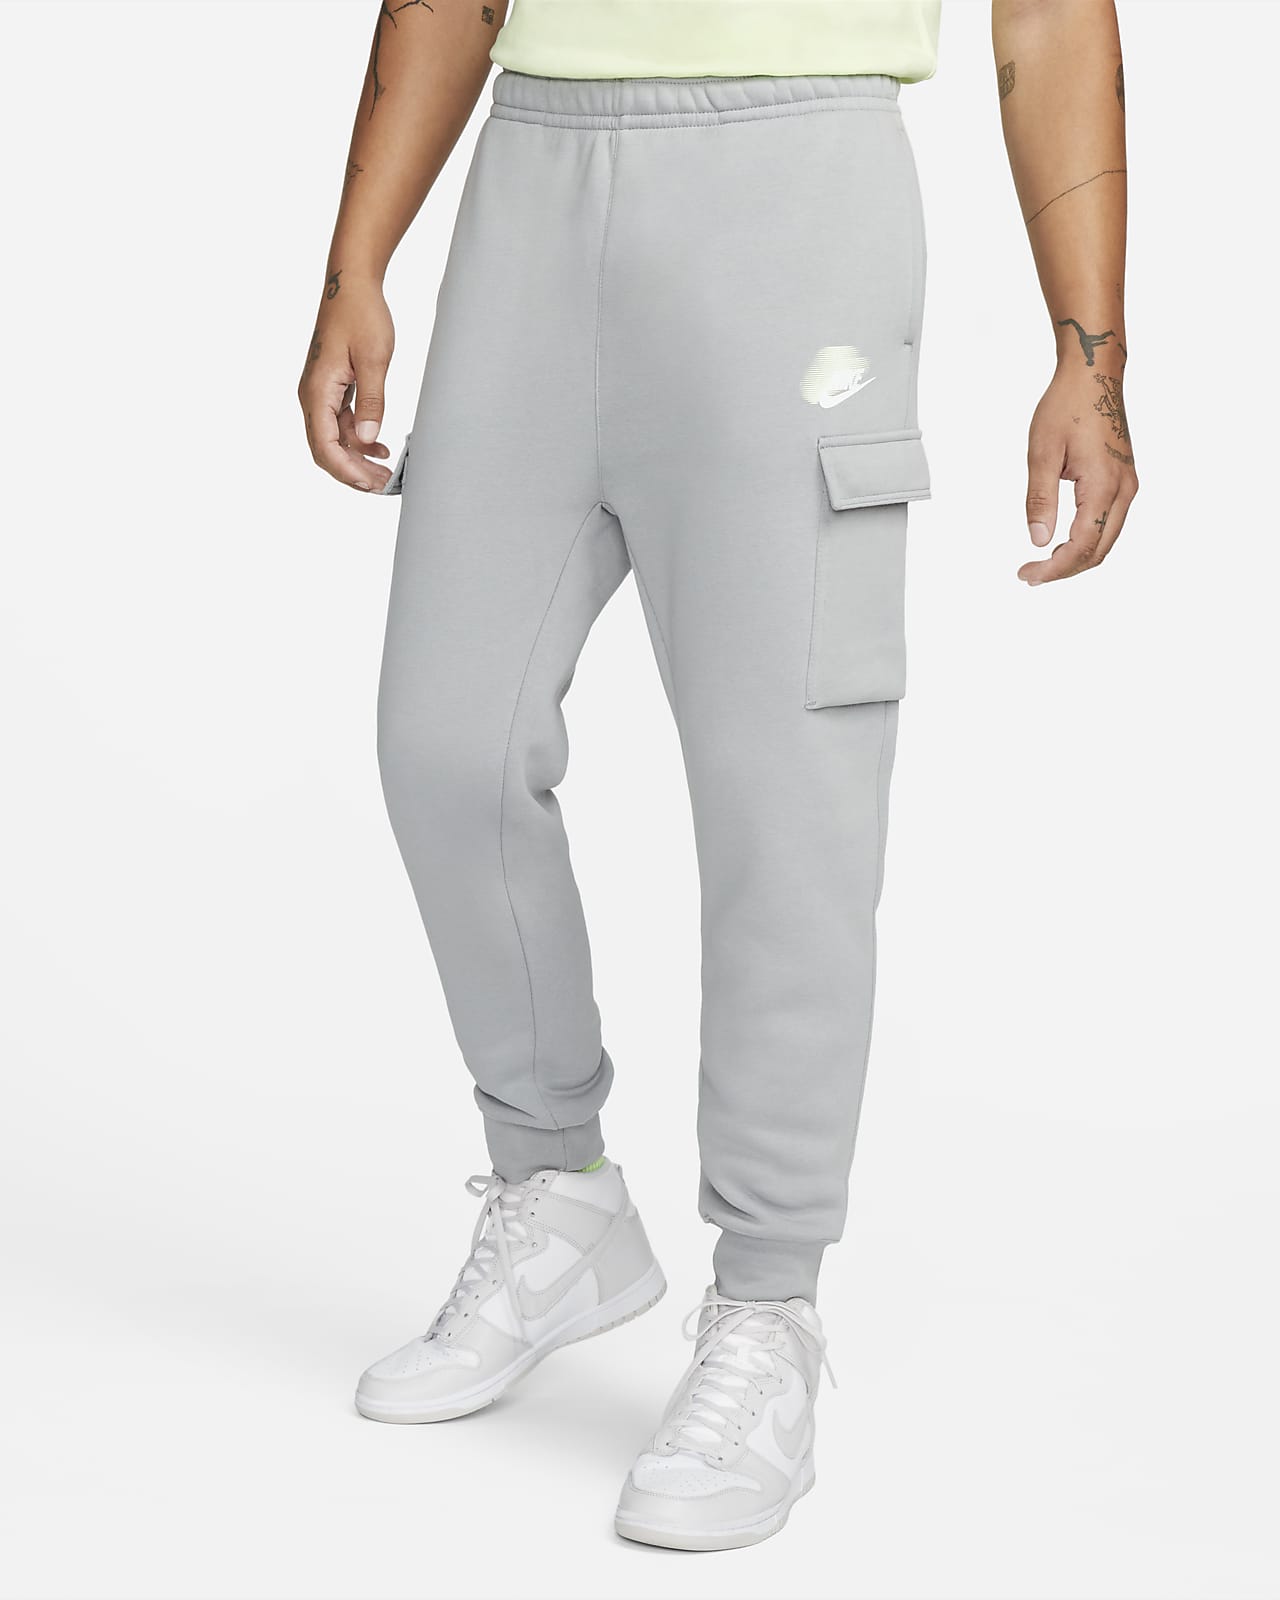 Nike Sportswear Standard Issue Men's Cargo Trousers